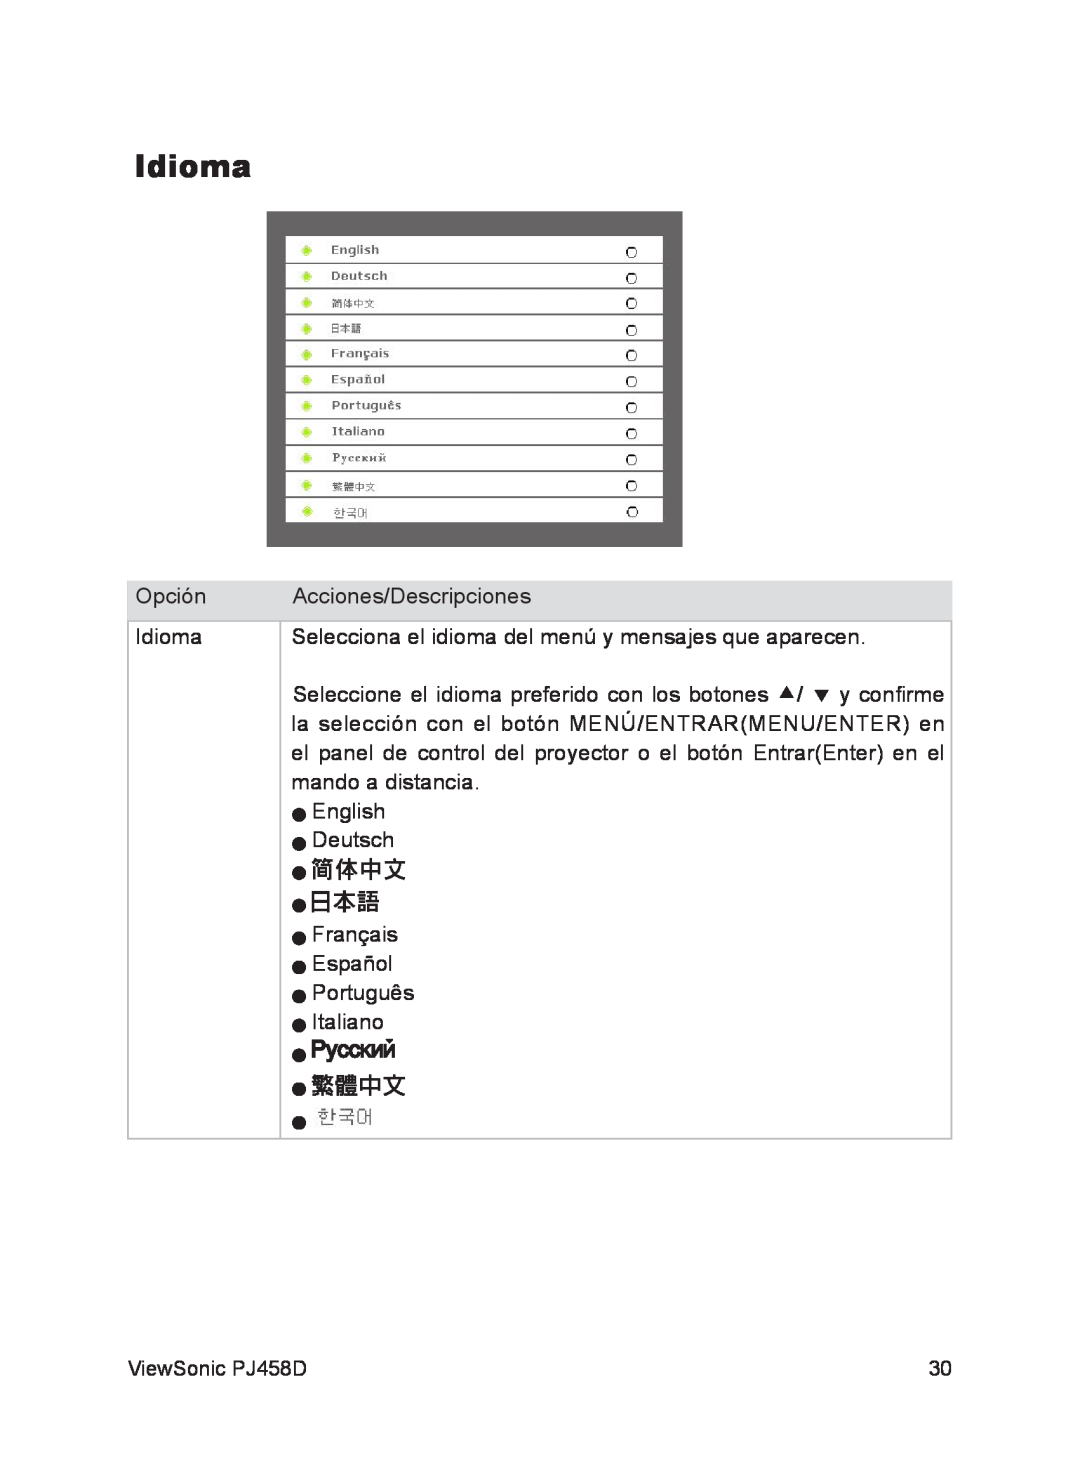 ViewSonic VS10872 manual Idioma 